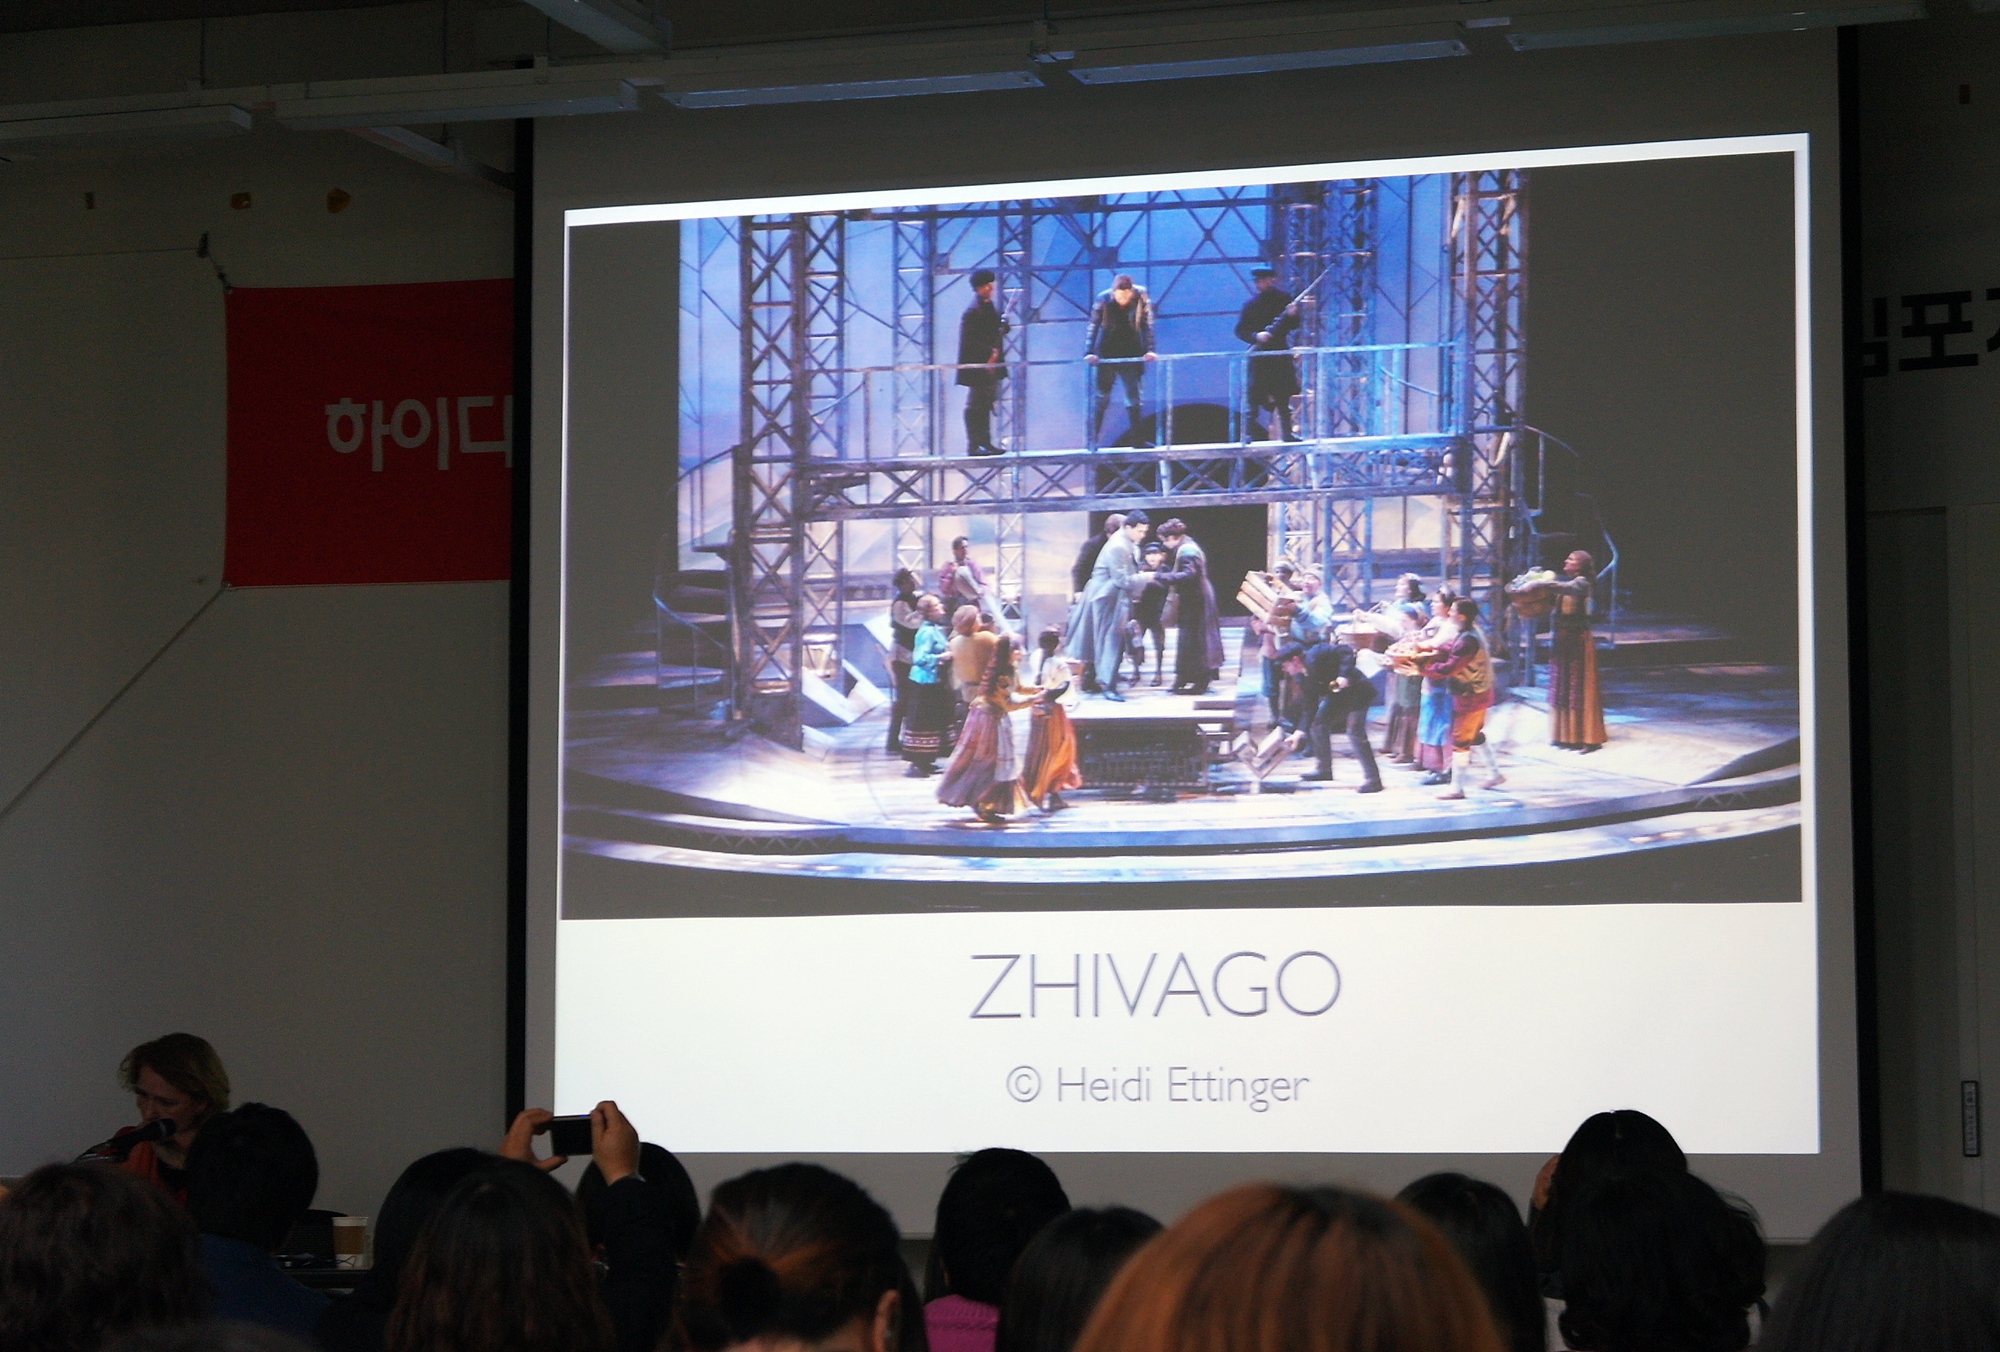 2011 무대디자인 워크숍 및 심포지엄(ZHIVAGO)ⓒHeidi Ettinger